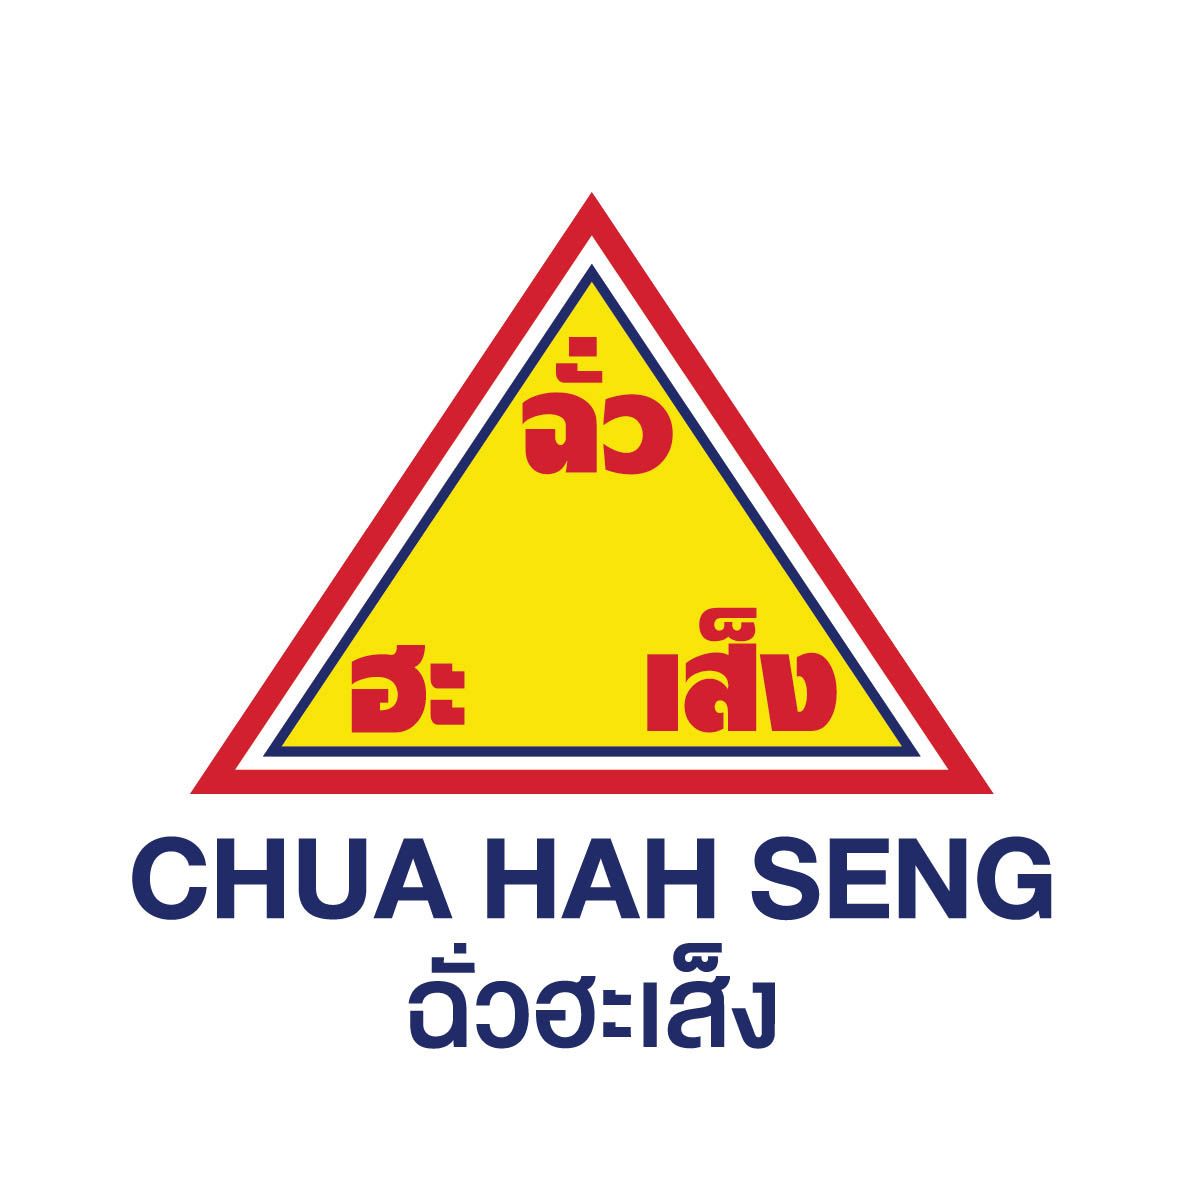 Chua Hah Seng